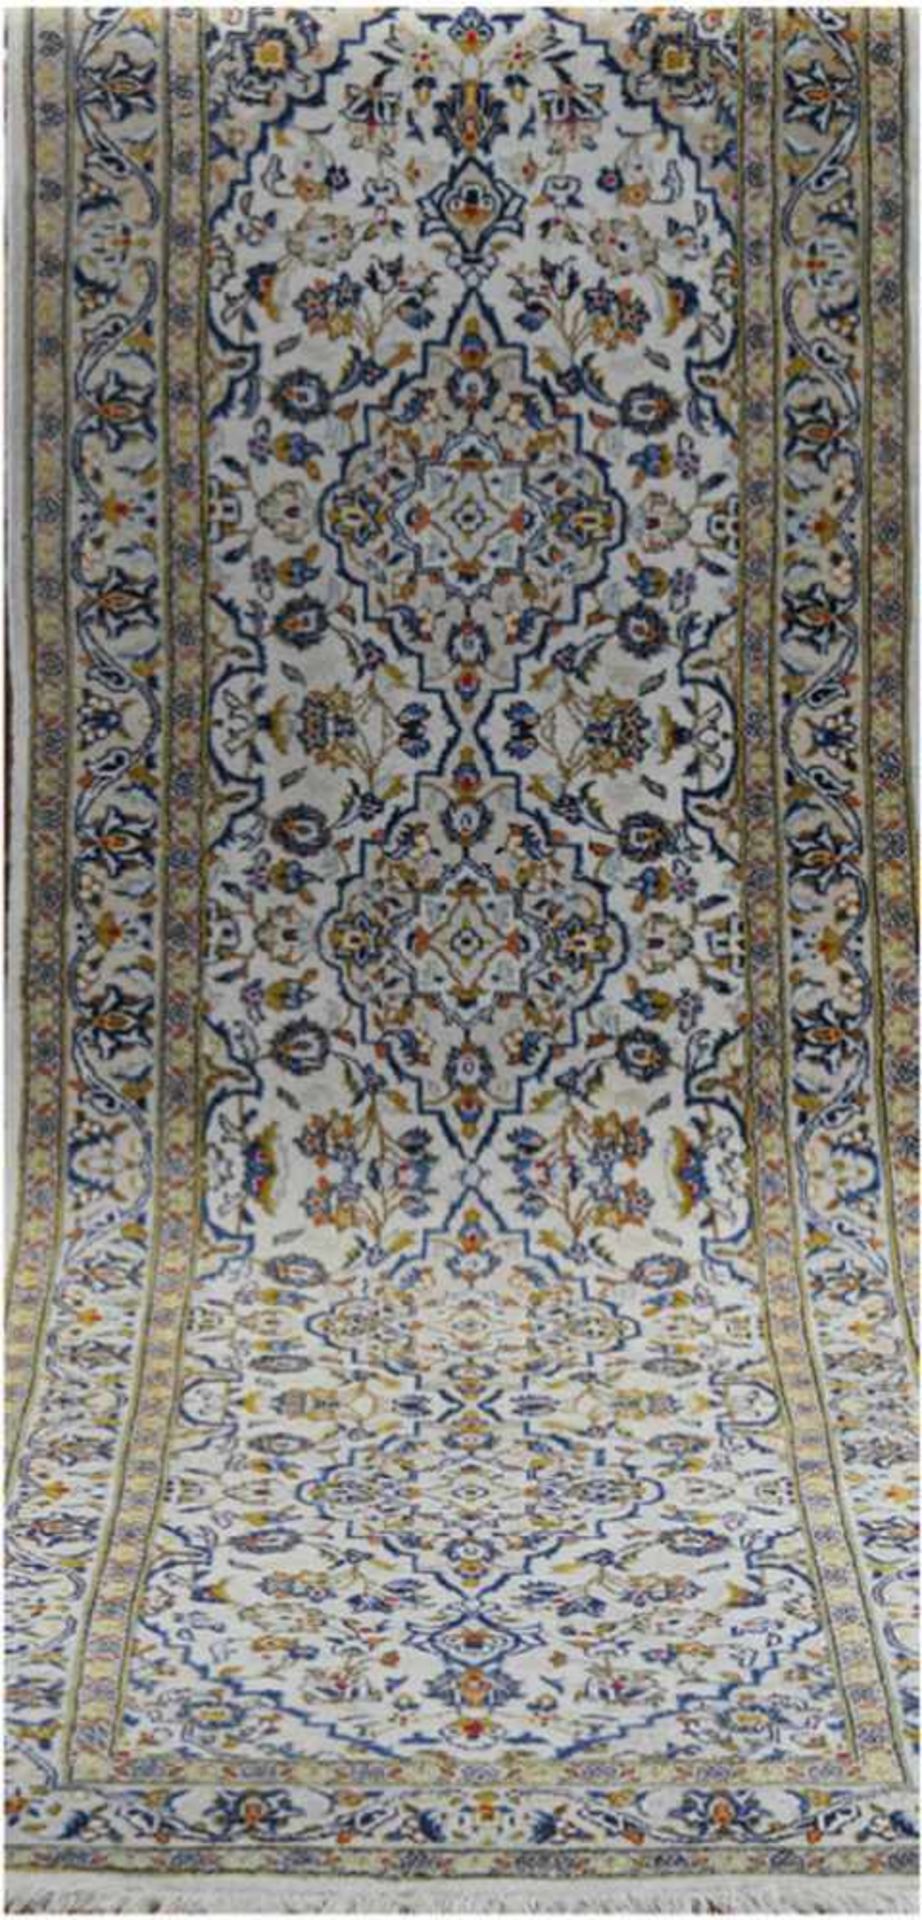 Teppich, hellgrundig mit durchgehendem Muster u. floralen Motiven, Kanten stellenweiseleicht